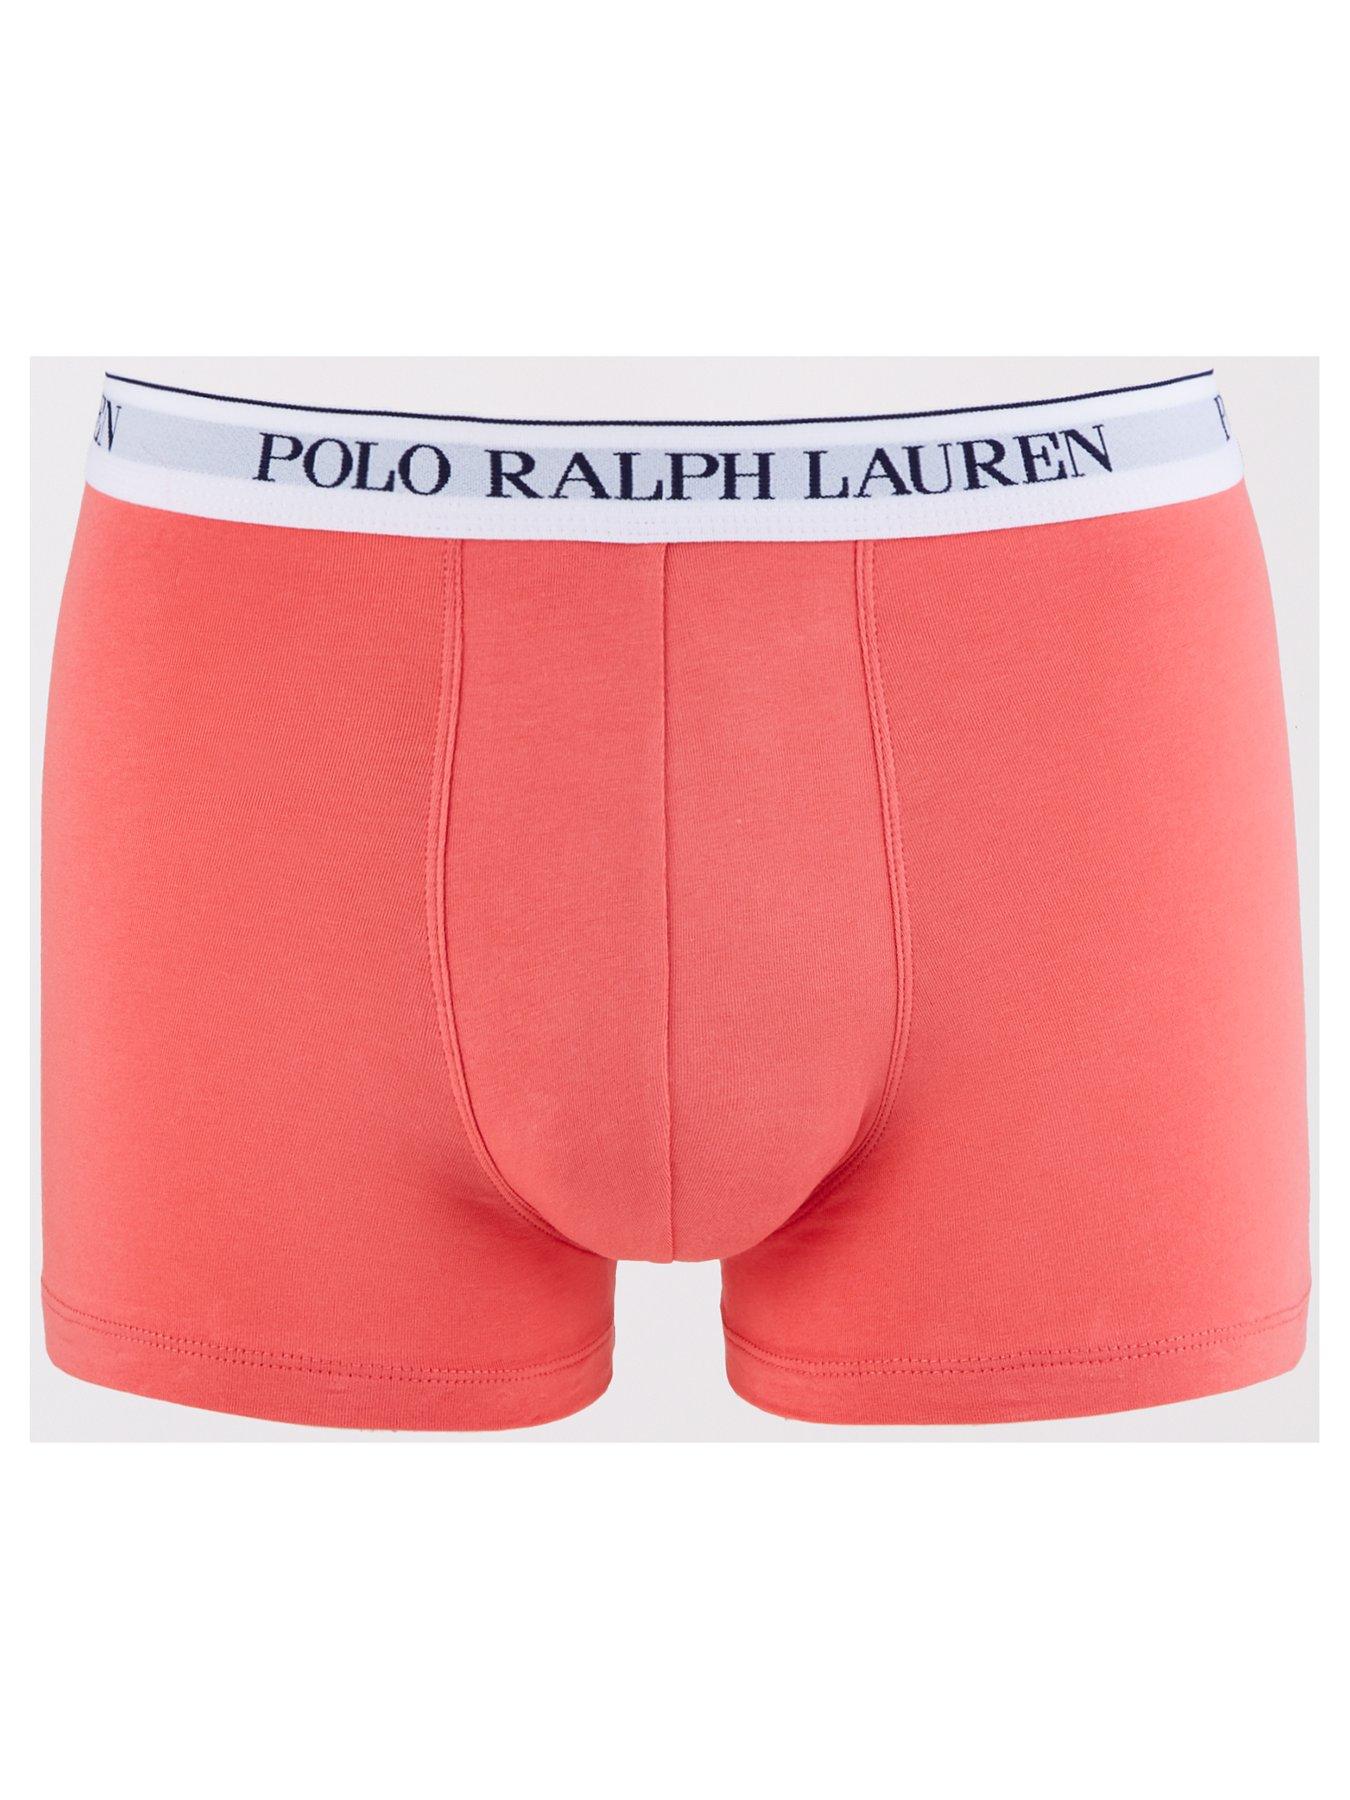 Polo Ralph Lauren 3-Pack Boxers Trunk Boxer Shorts Underwear Trousers  Pantie S